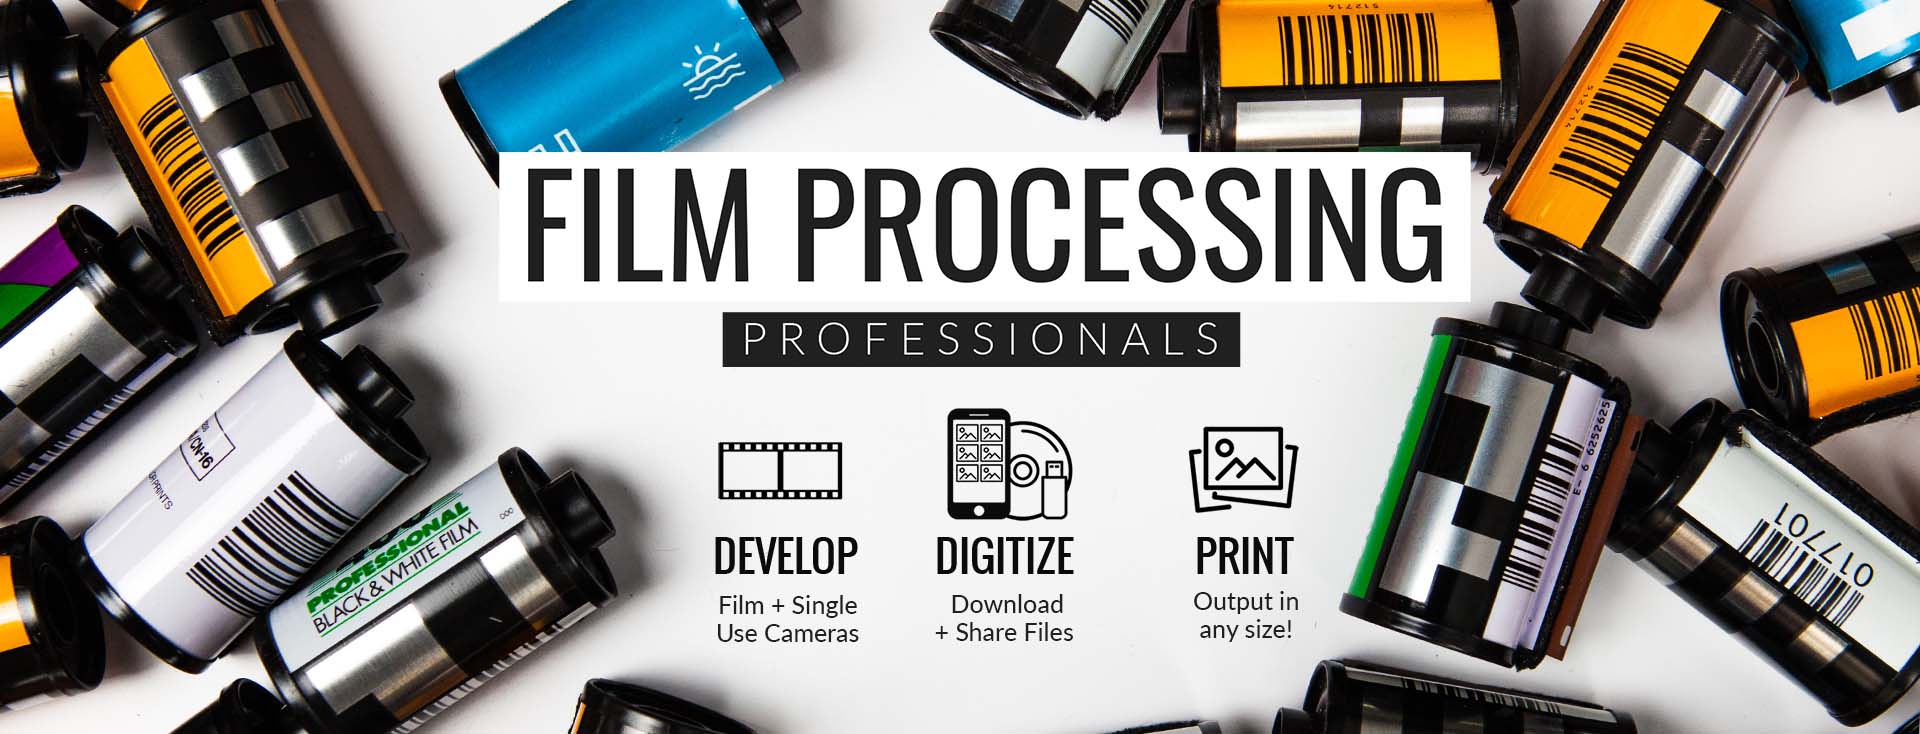 Film Processing Professionals